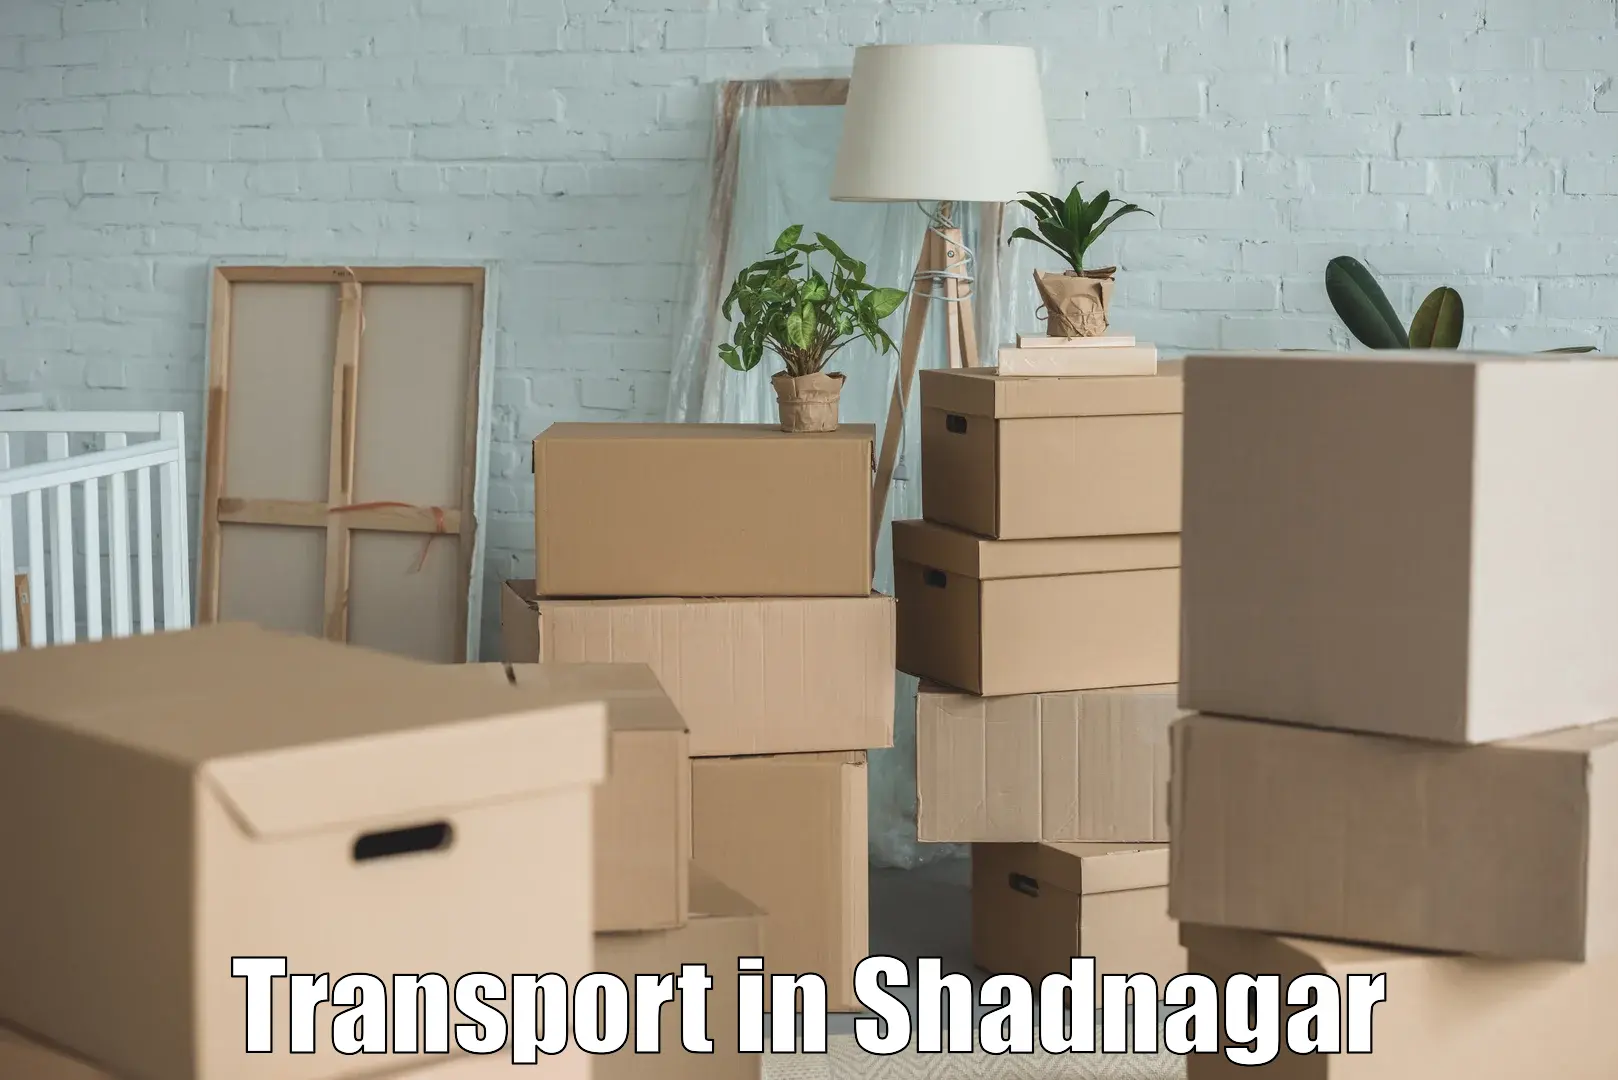 Commercial transport service in Shadnagar